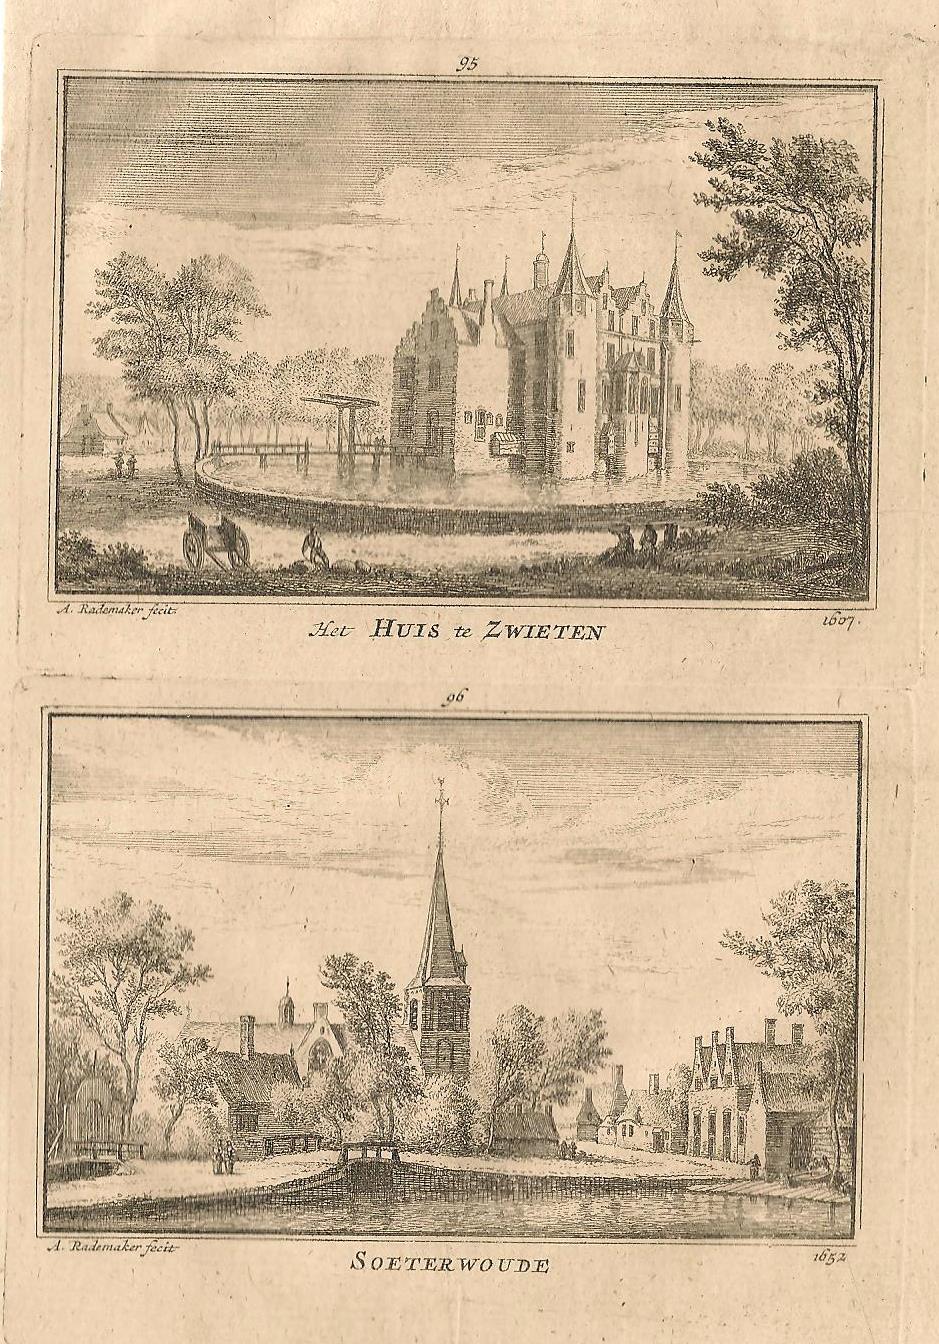 Zoeterwoude Dap en Huis Zwieten - A Rademaker / JA Crajenschot - 1792